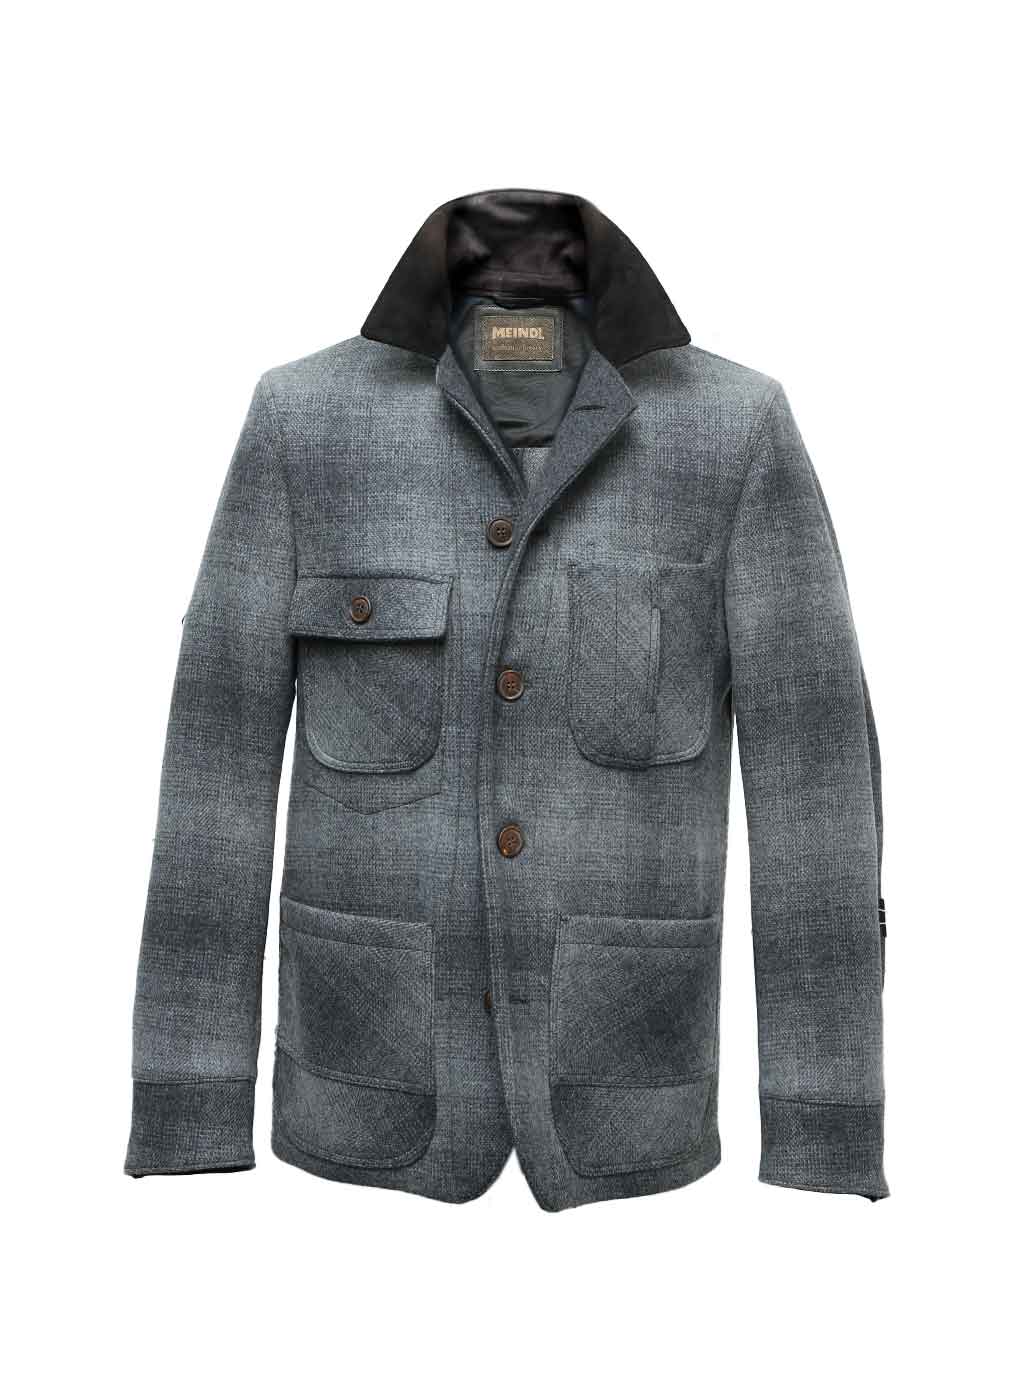 Fabric Jacket Men “Cooper”, karo grey